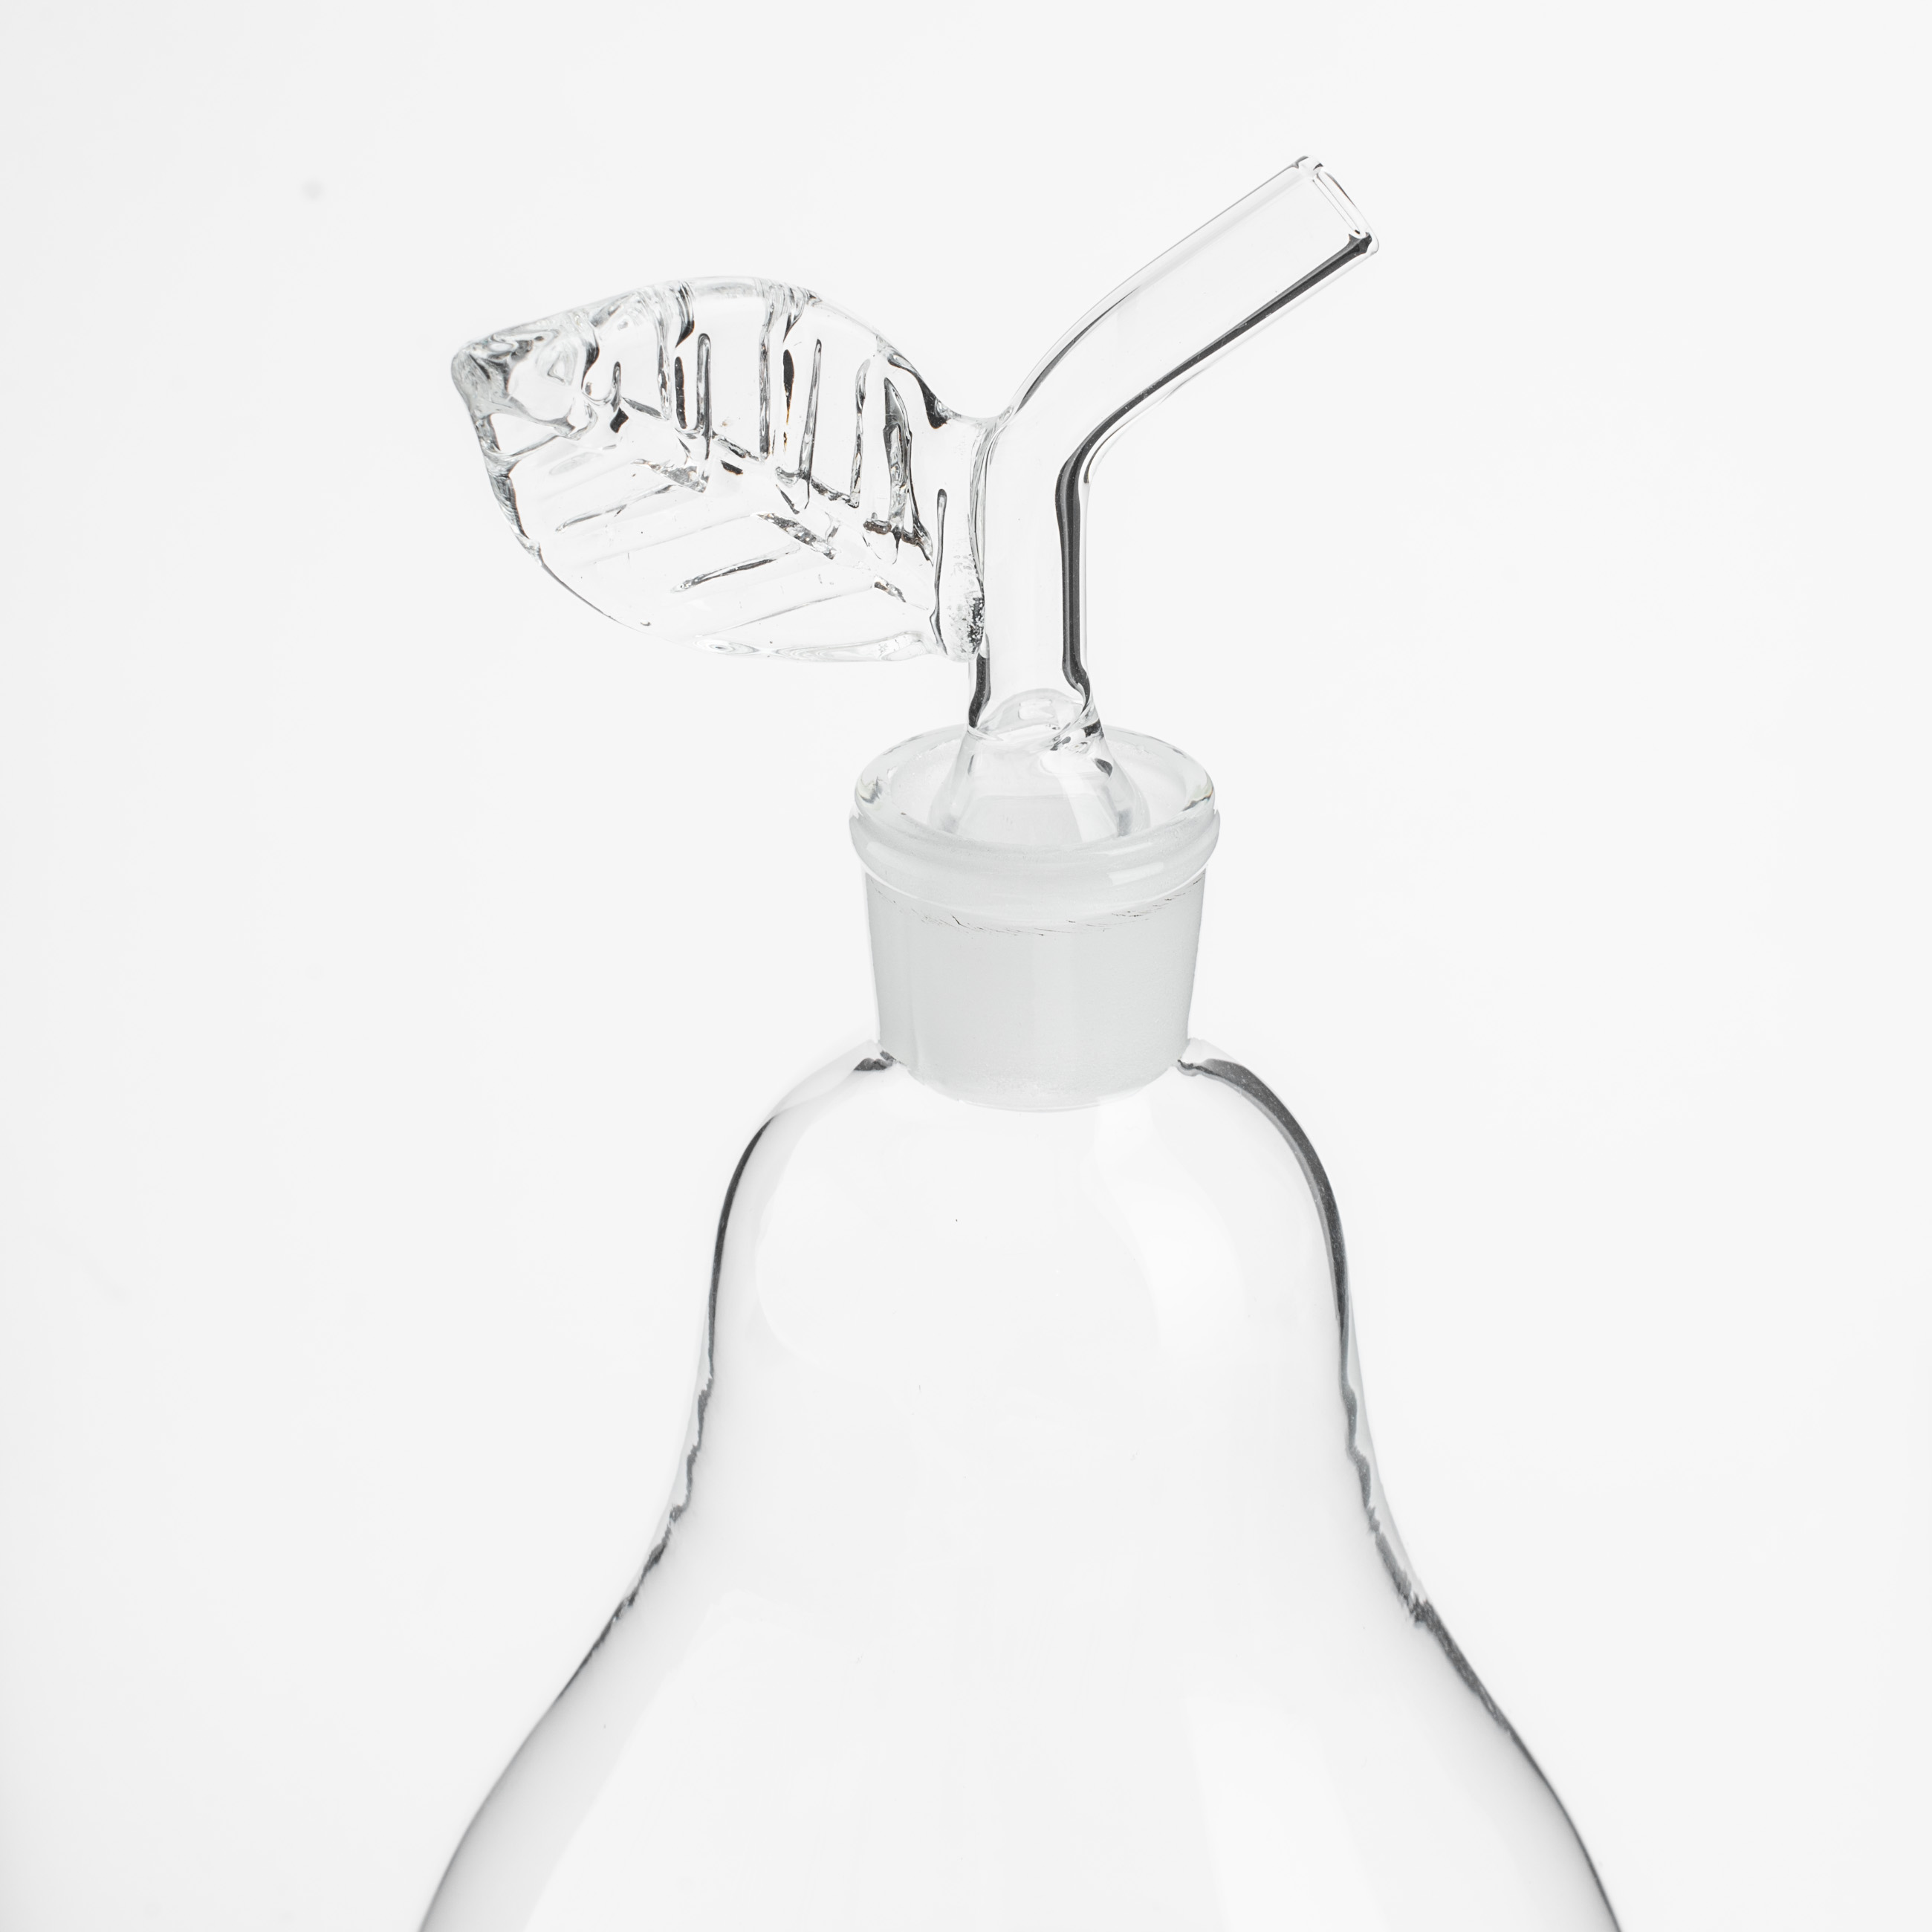 Бутылка для масла или уксуса, 450 мл, с дозатором, стекло, Груша, Fruit garden изображение № 4